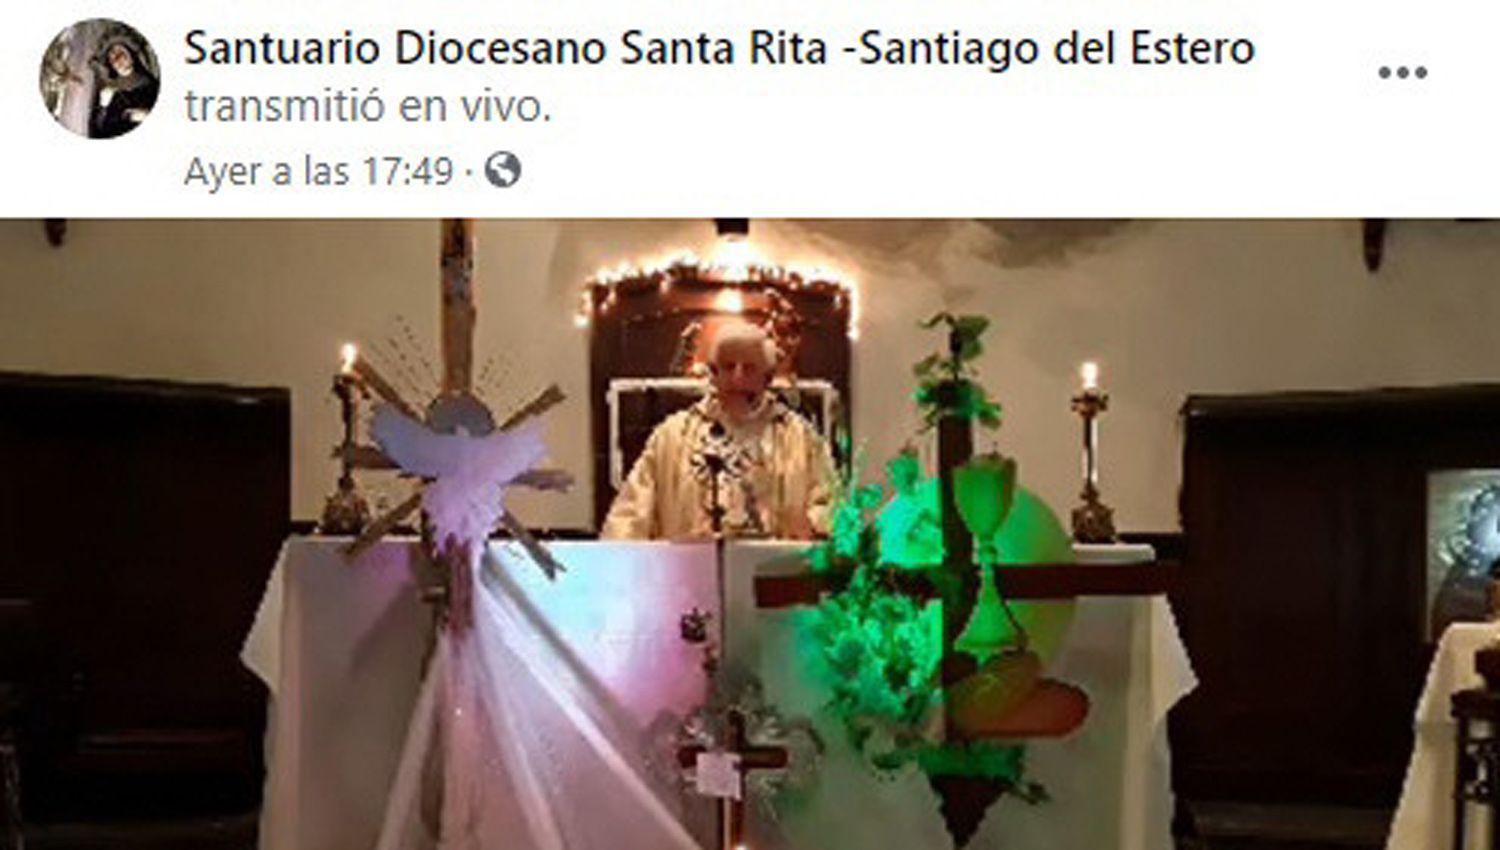 Todas son transmitidas por el Facebook de la
institución Santuario Diocesano Santa Rita - Santiago del Estero